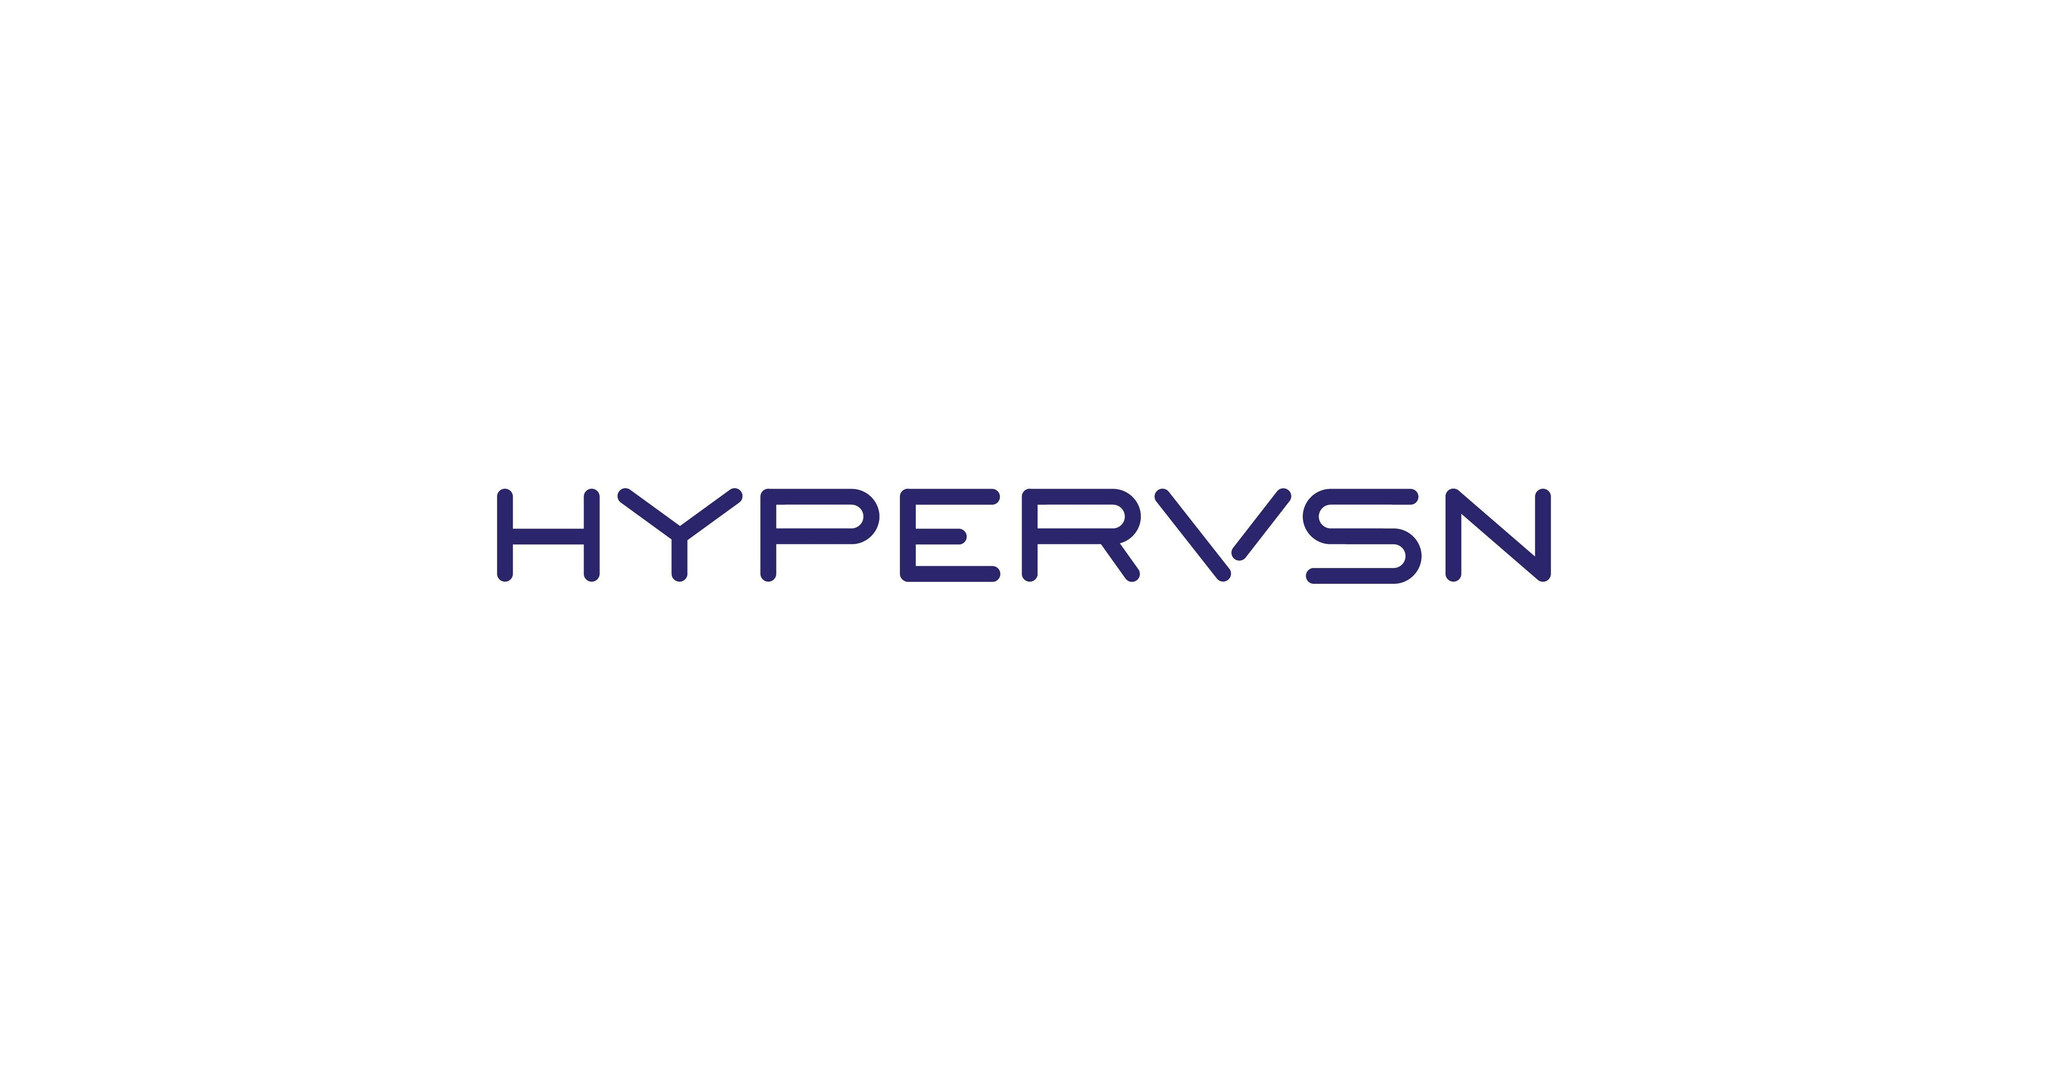 HYPERVSN logo